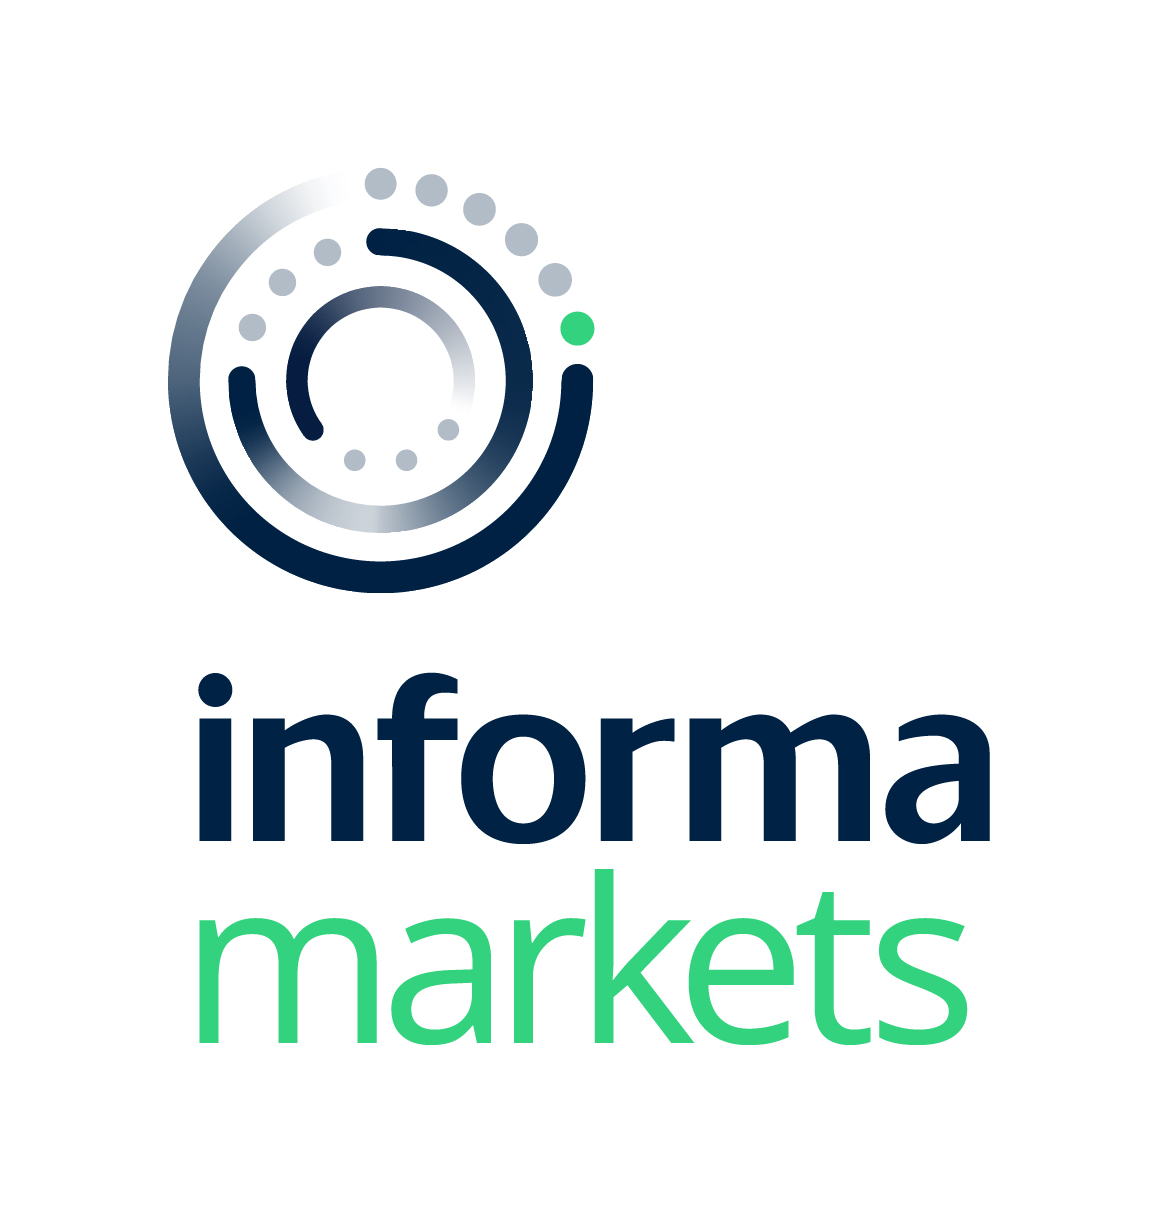 informa markets Food & Hospitality Logo